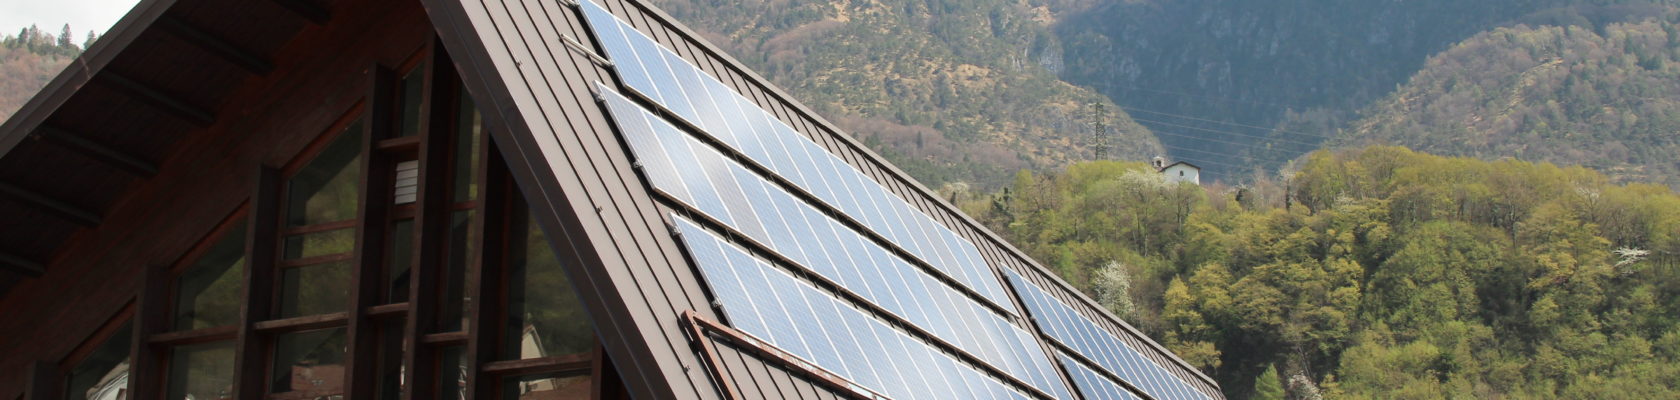 Impianto fotovoltaico Palestra di Pieve di Bono